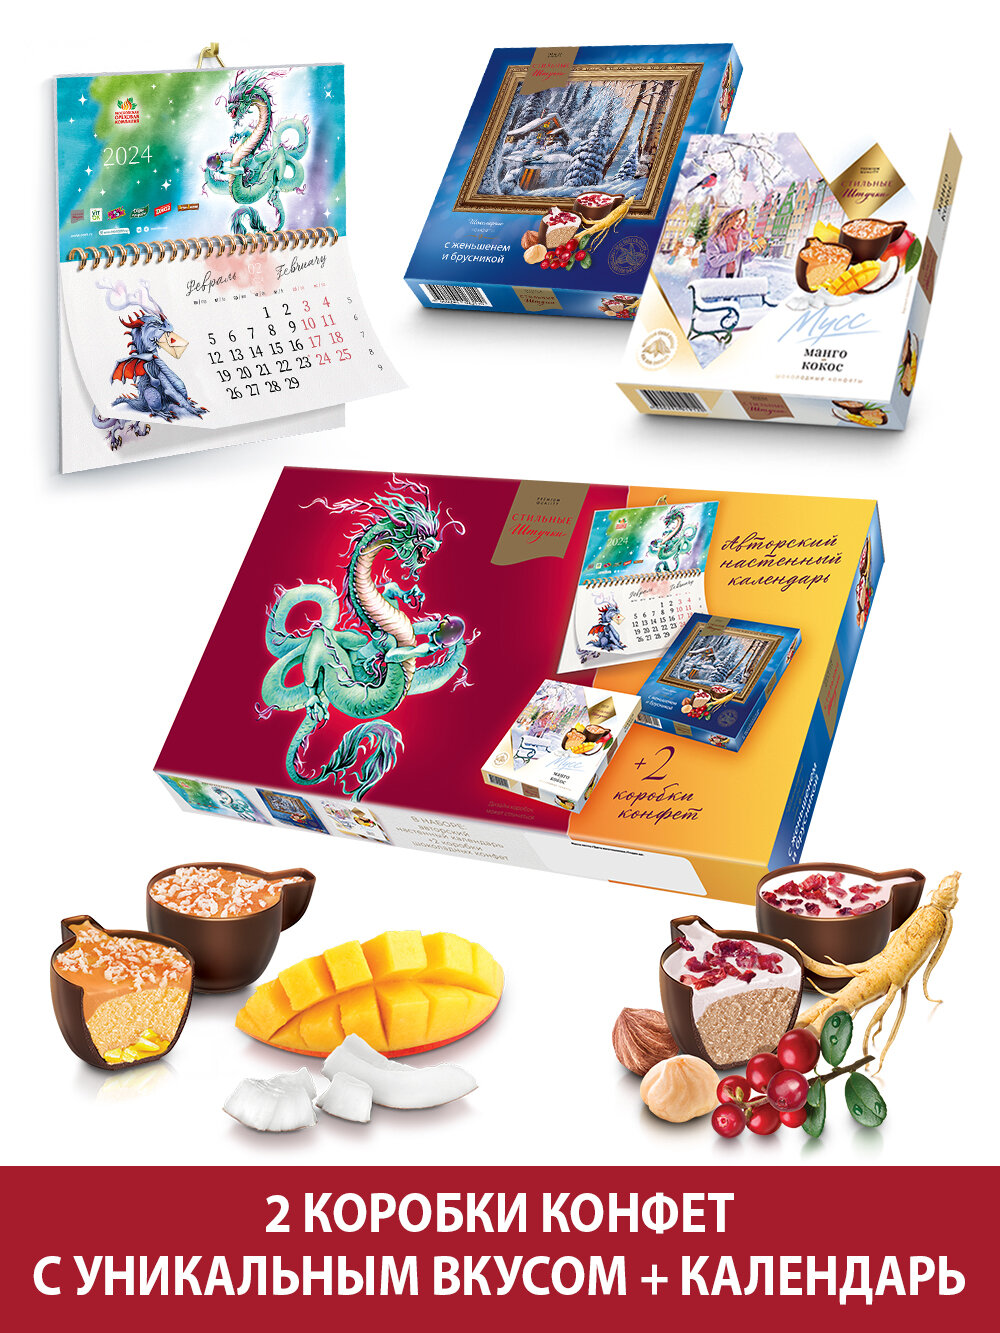 Конфеты Стильные штучки шоколадные подарочные в коробке манго-кокос и женьшень-брусника с календарем символ нового года 2023 Кролик